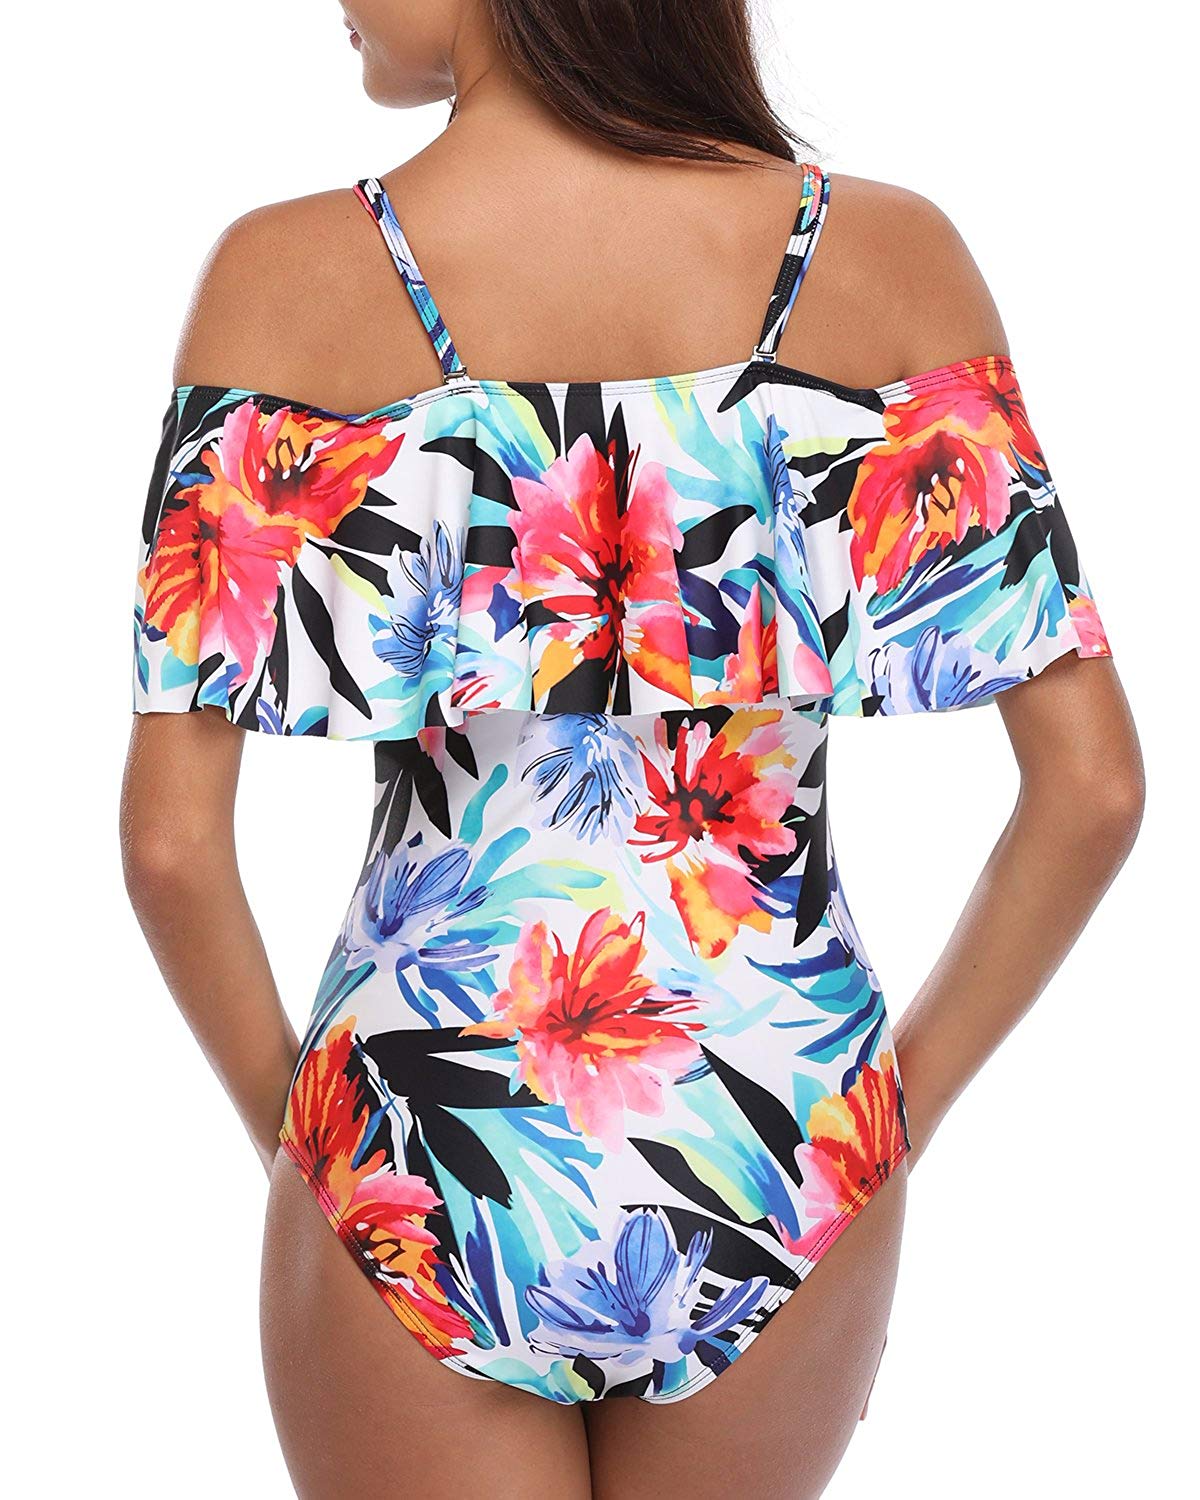 women's one piece ruffle swimsuit - off shoulder swimwear bathing suit